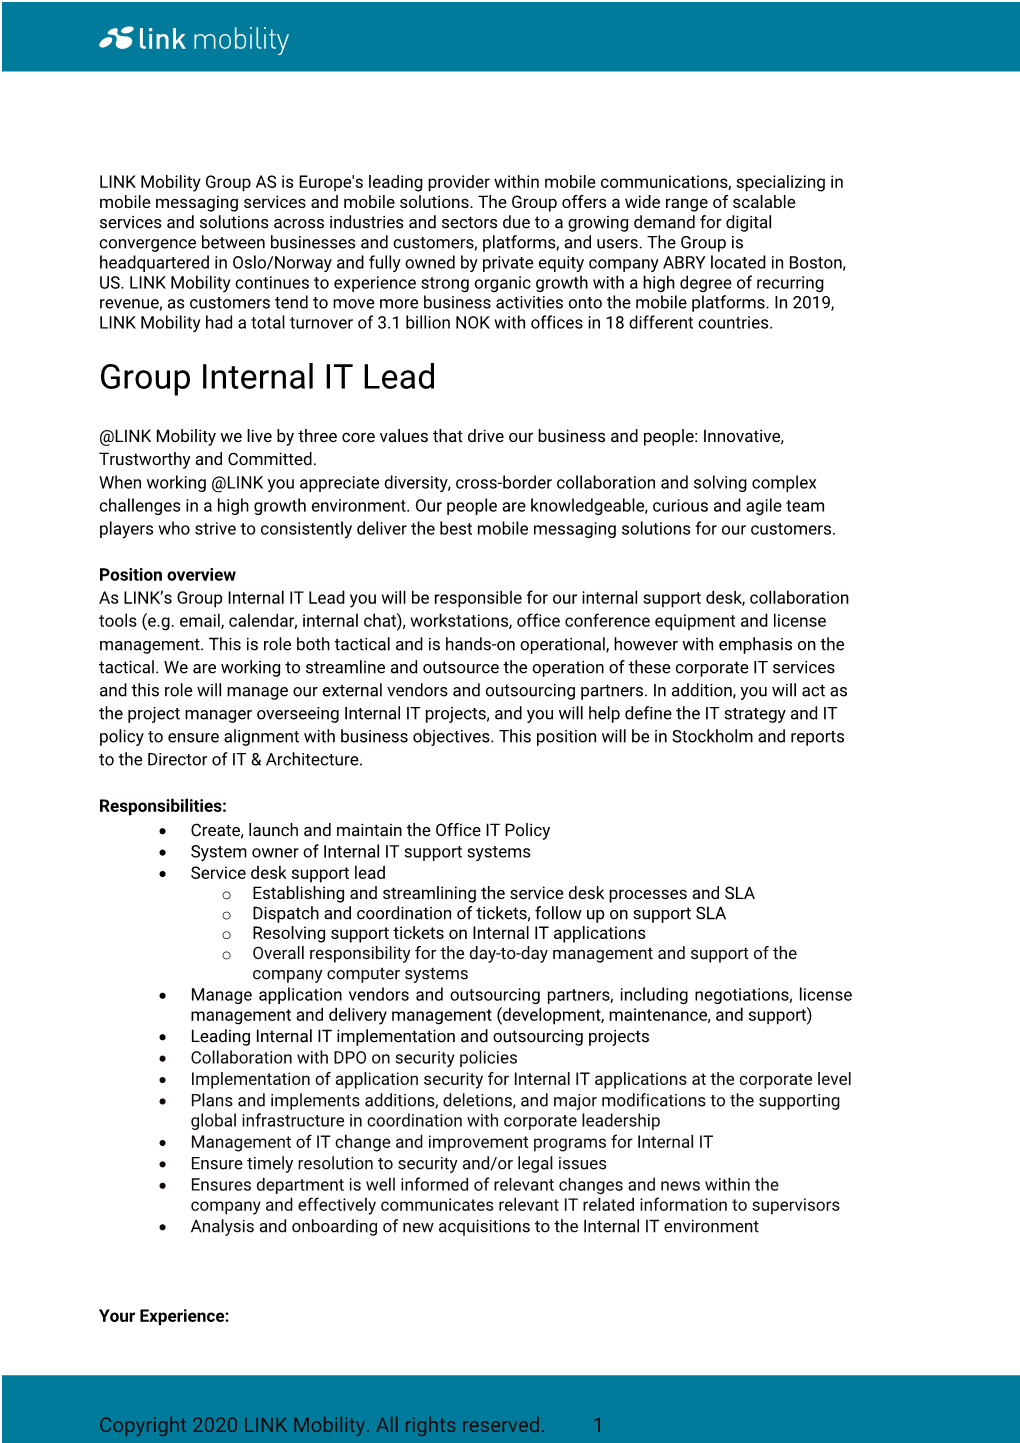 Group Internal IT Lead